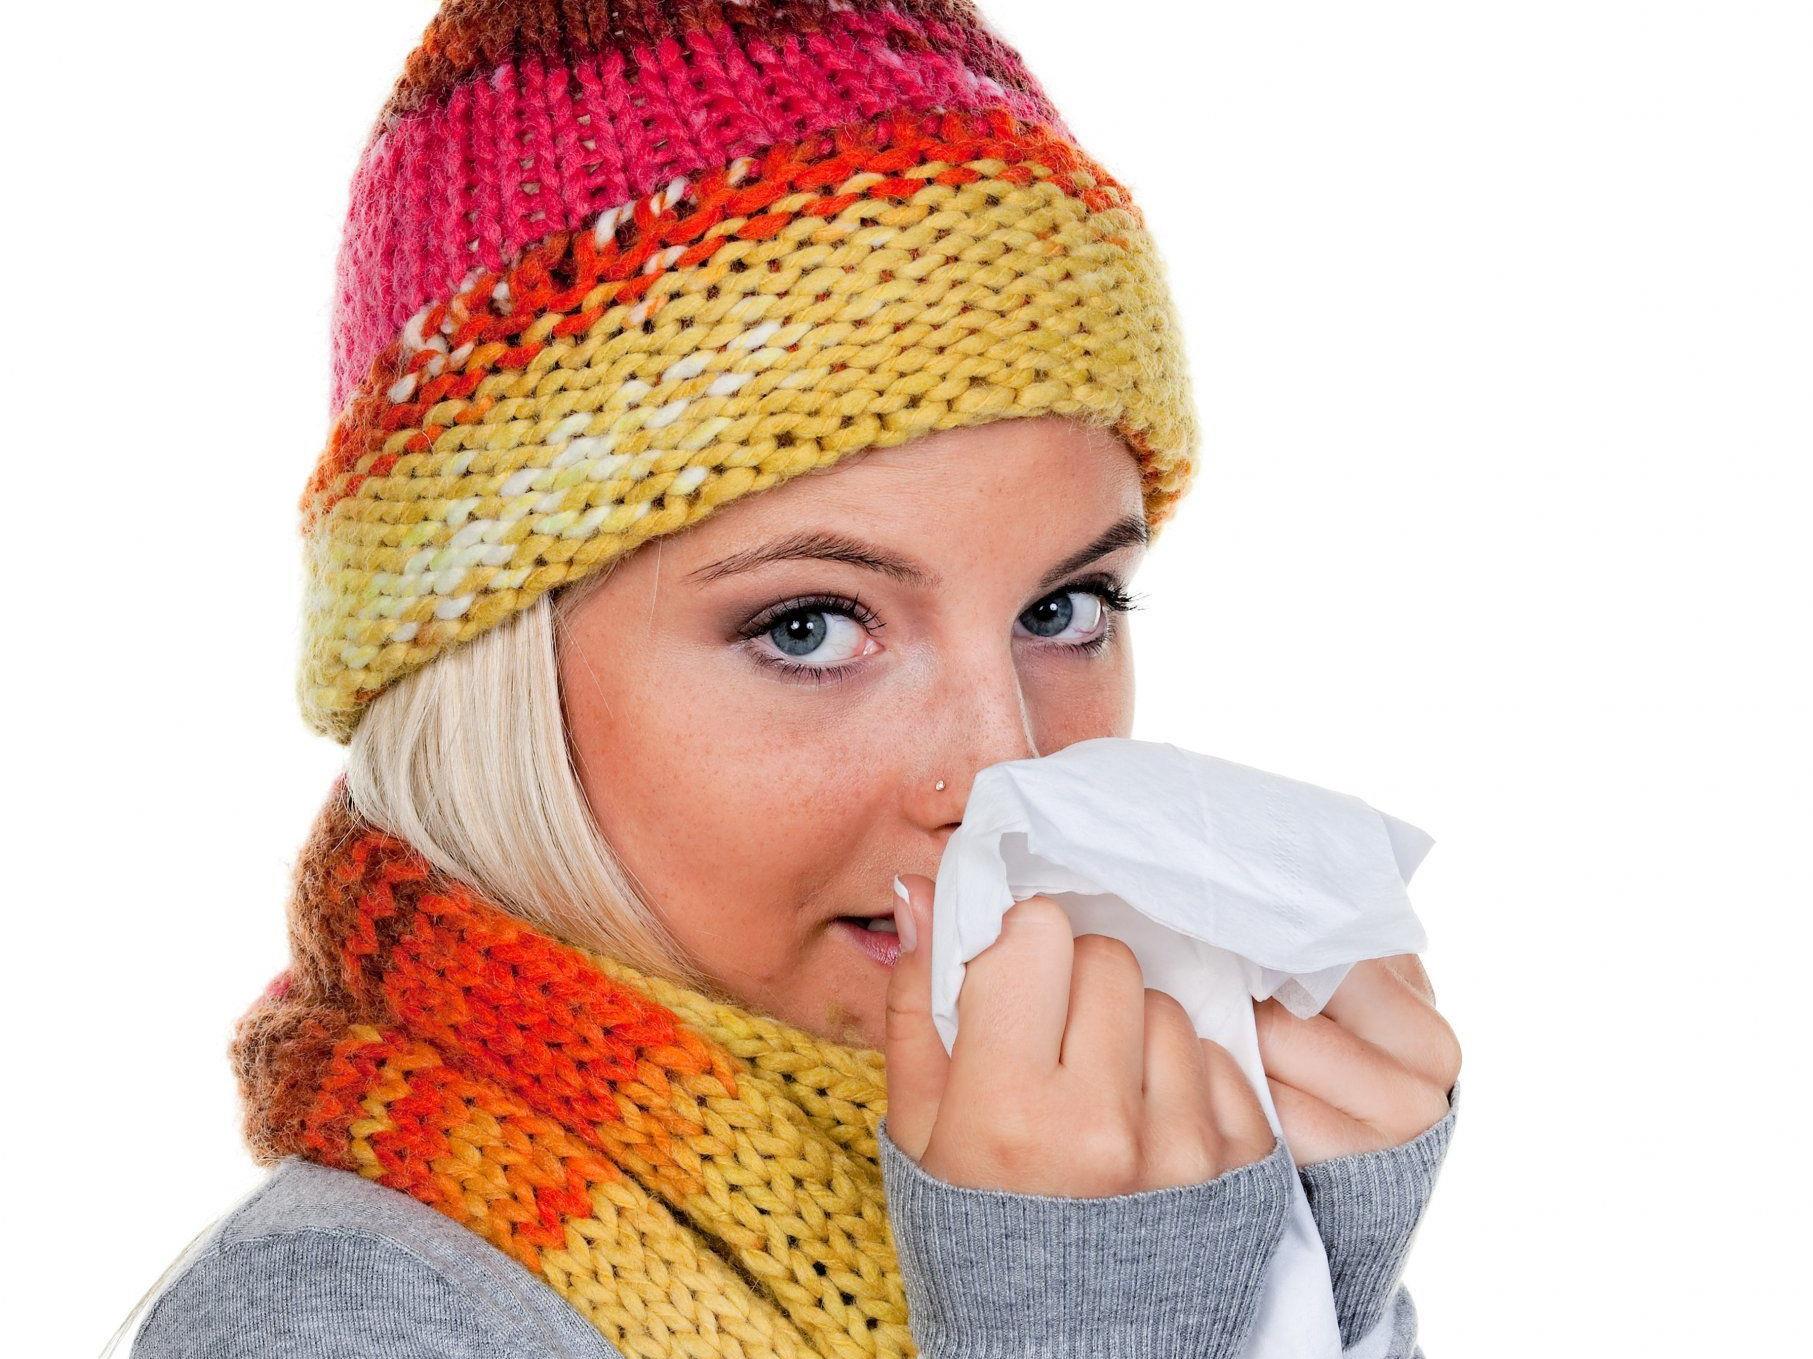 Oftmals helfen natürliche Hilfsmittel eine fiese Erkältung zu bekämpfen.